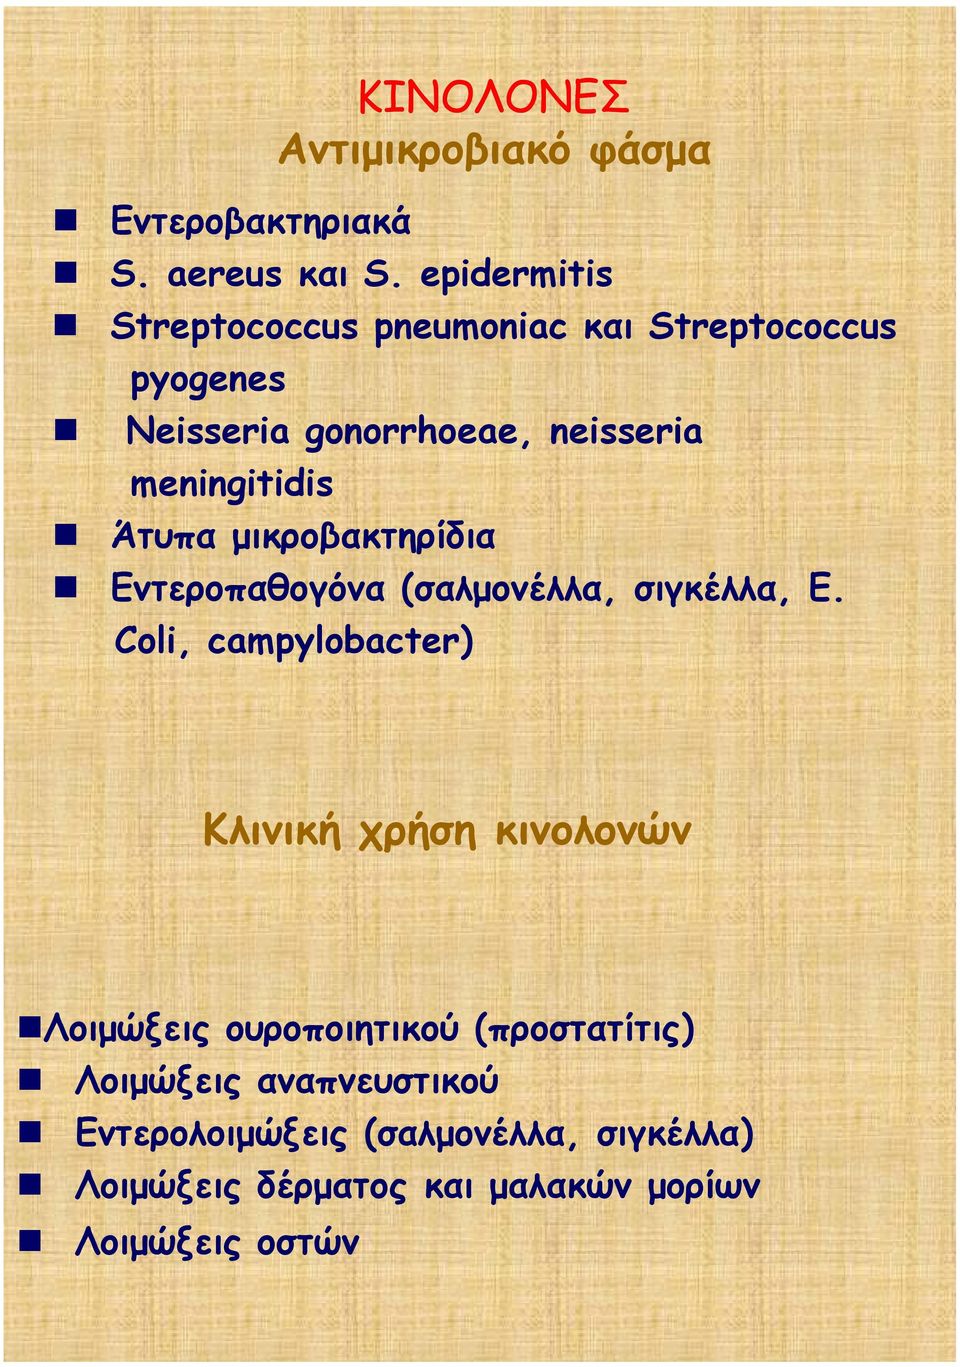 Άτυπα μικροβακτηρίδια Εντεροπαθογόνα (σαλμονέλλα, σιγκέλλα, E.